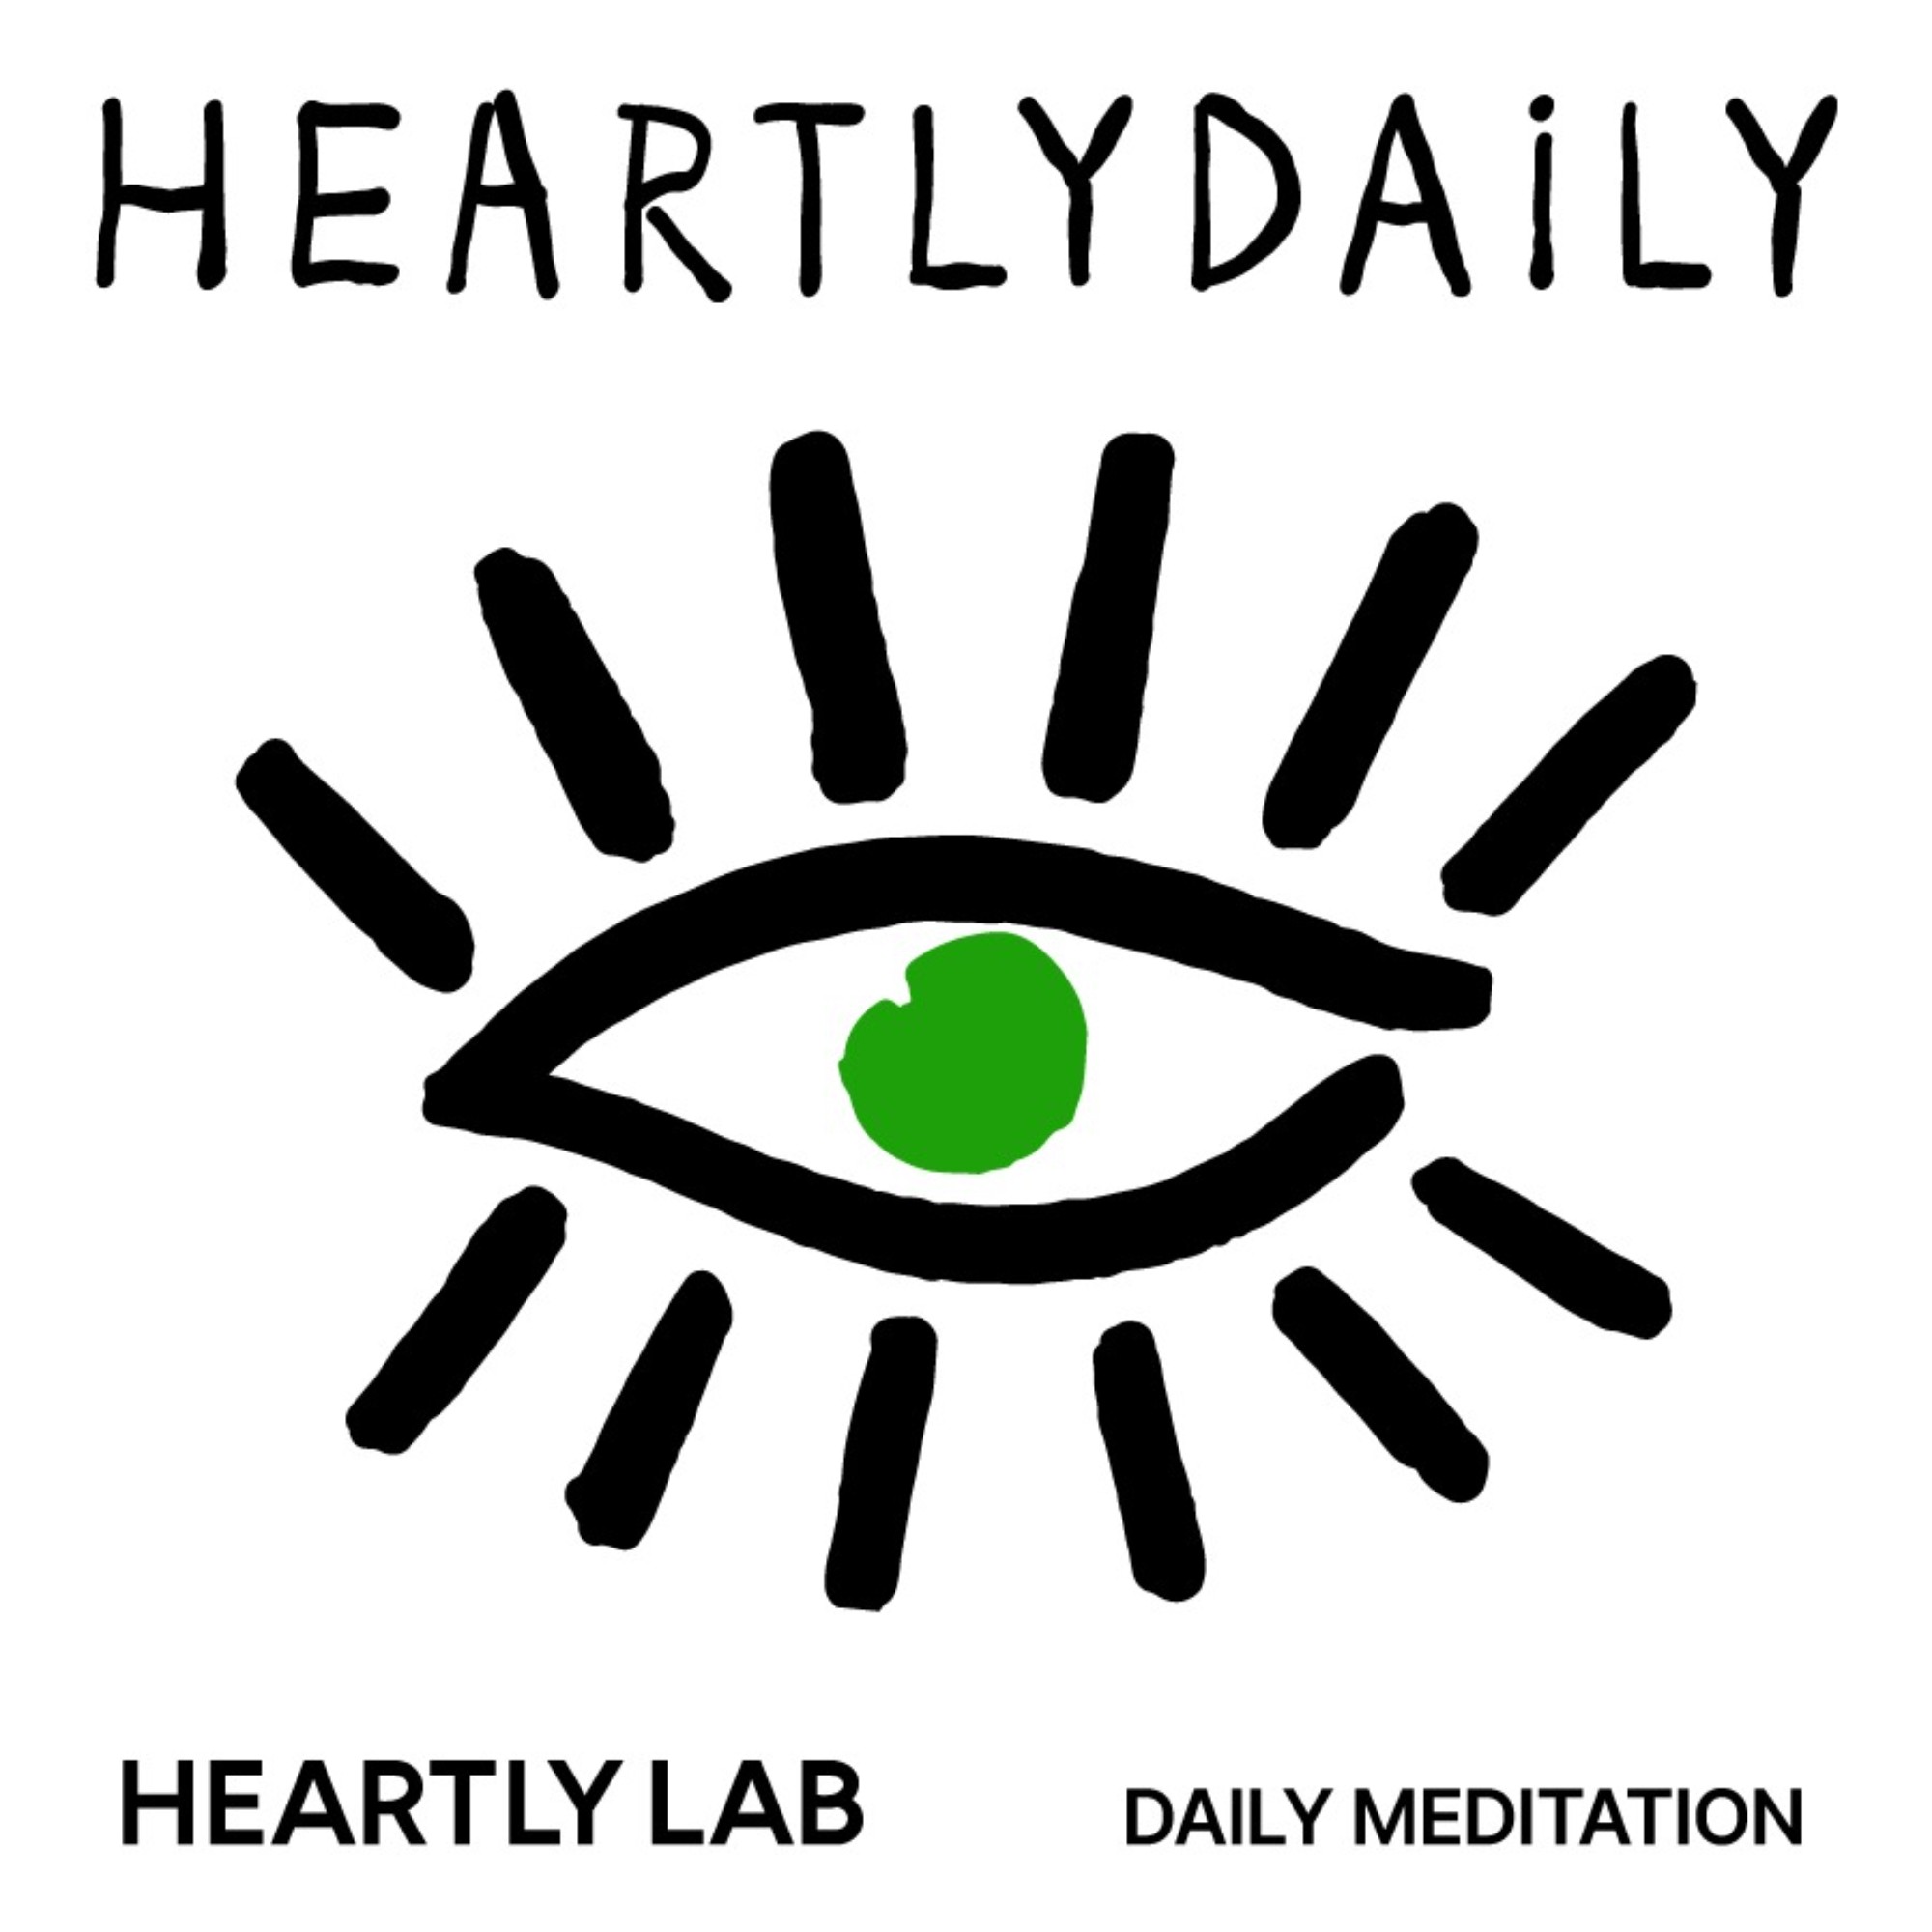 Heartly Daily 每日冥想